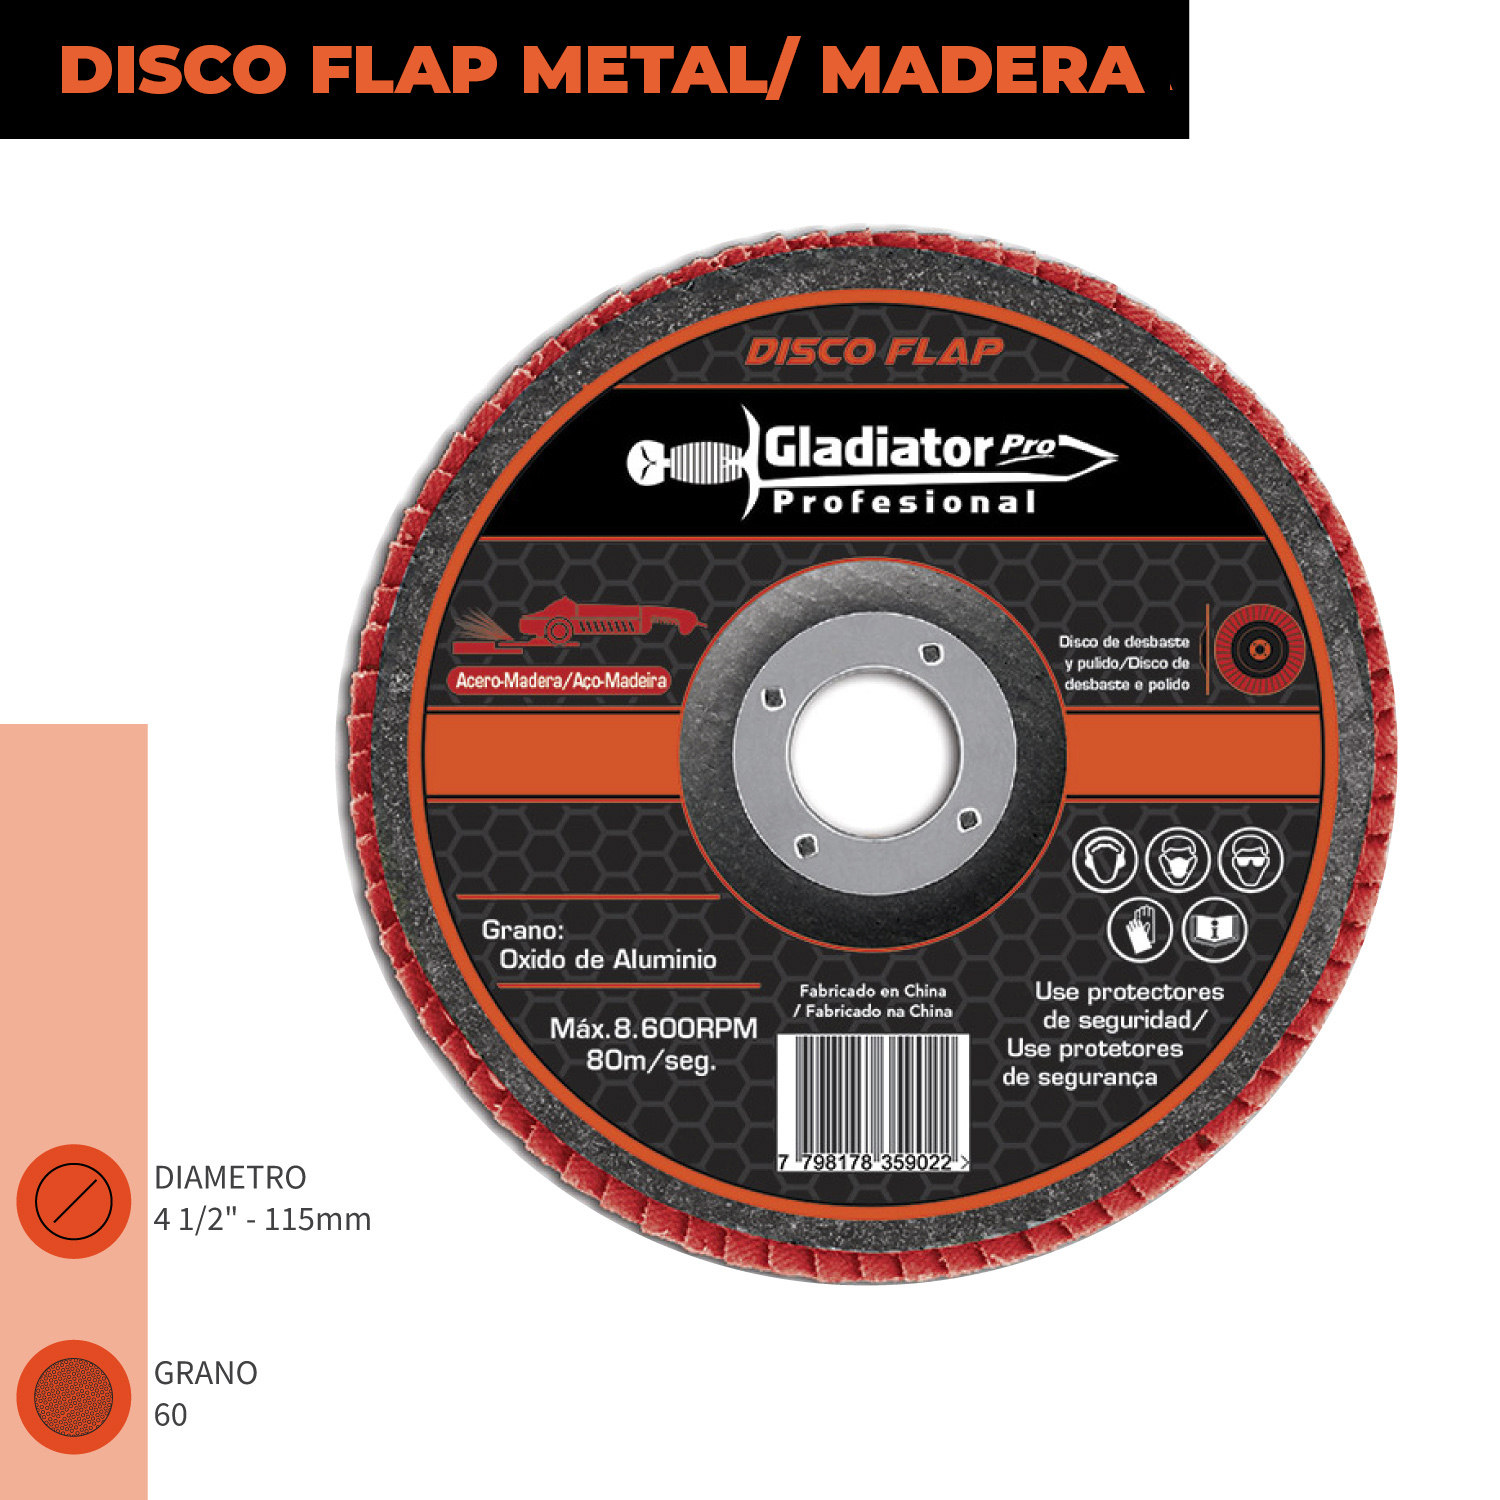 Disco flap 4 1/2' acero y madera gr120 dfa 8115120